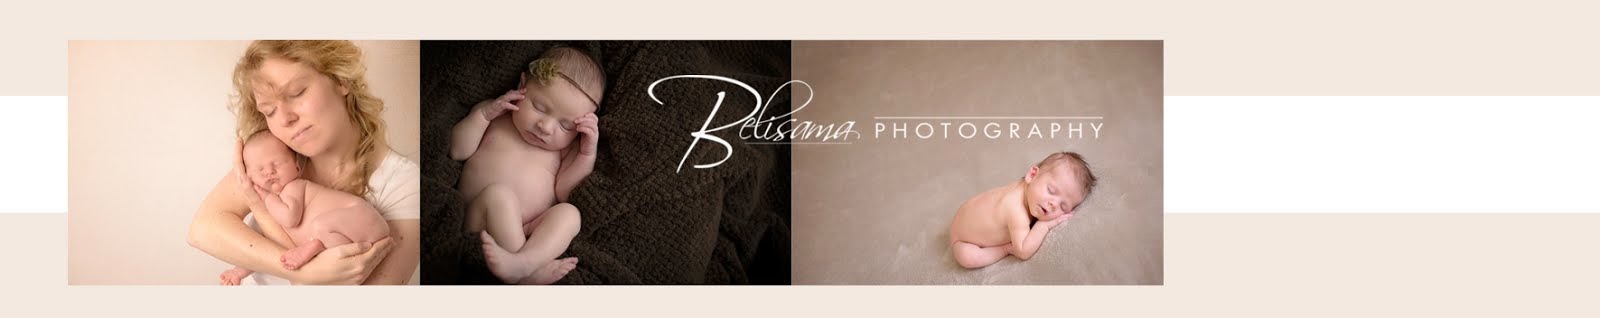 Belisama Photography